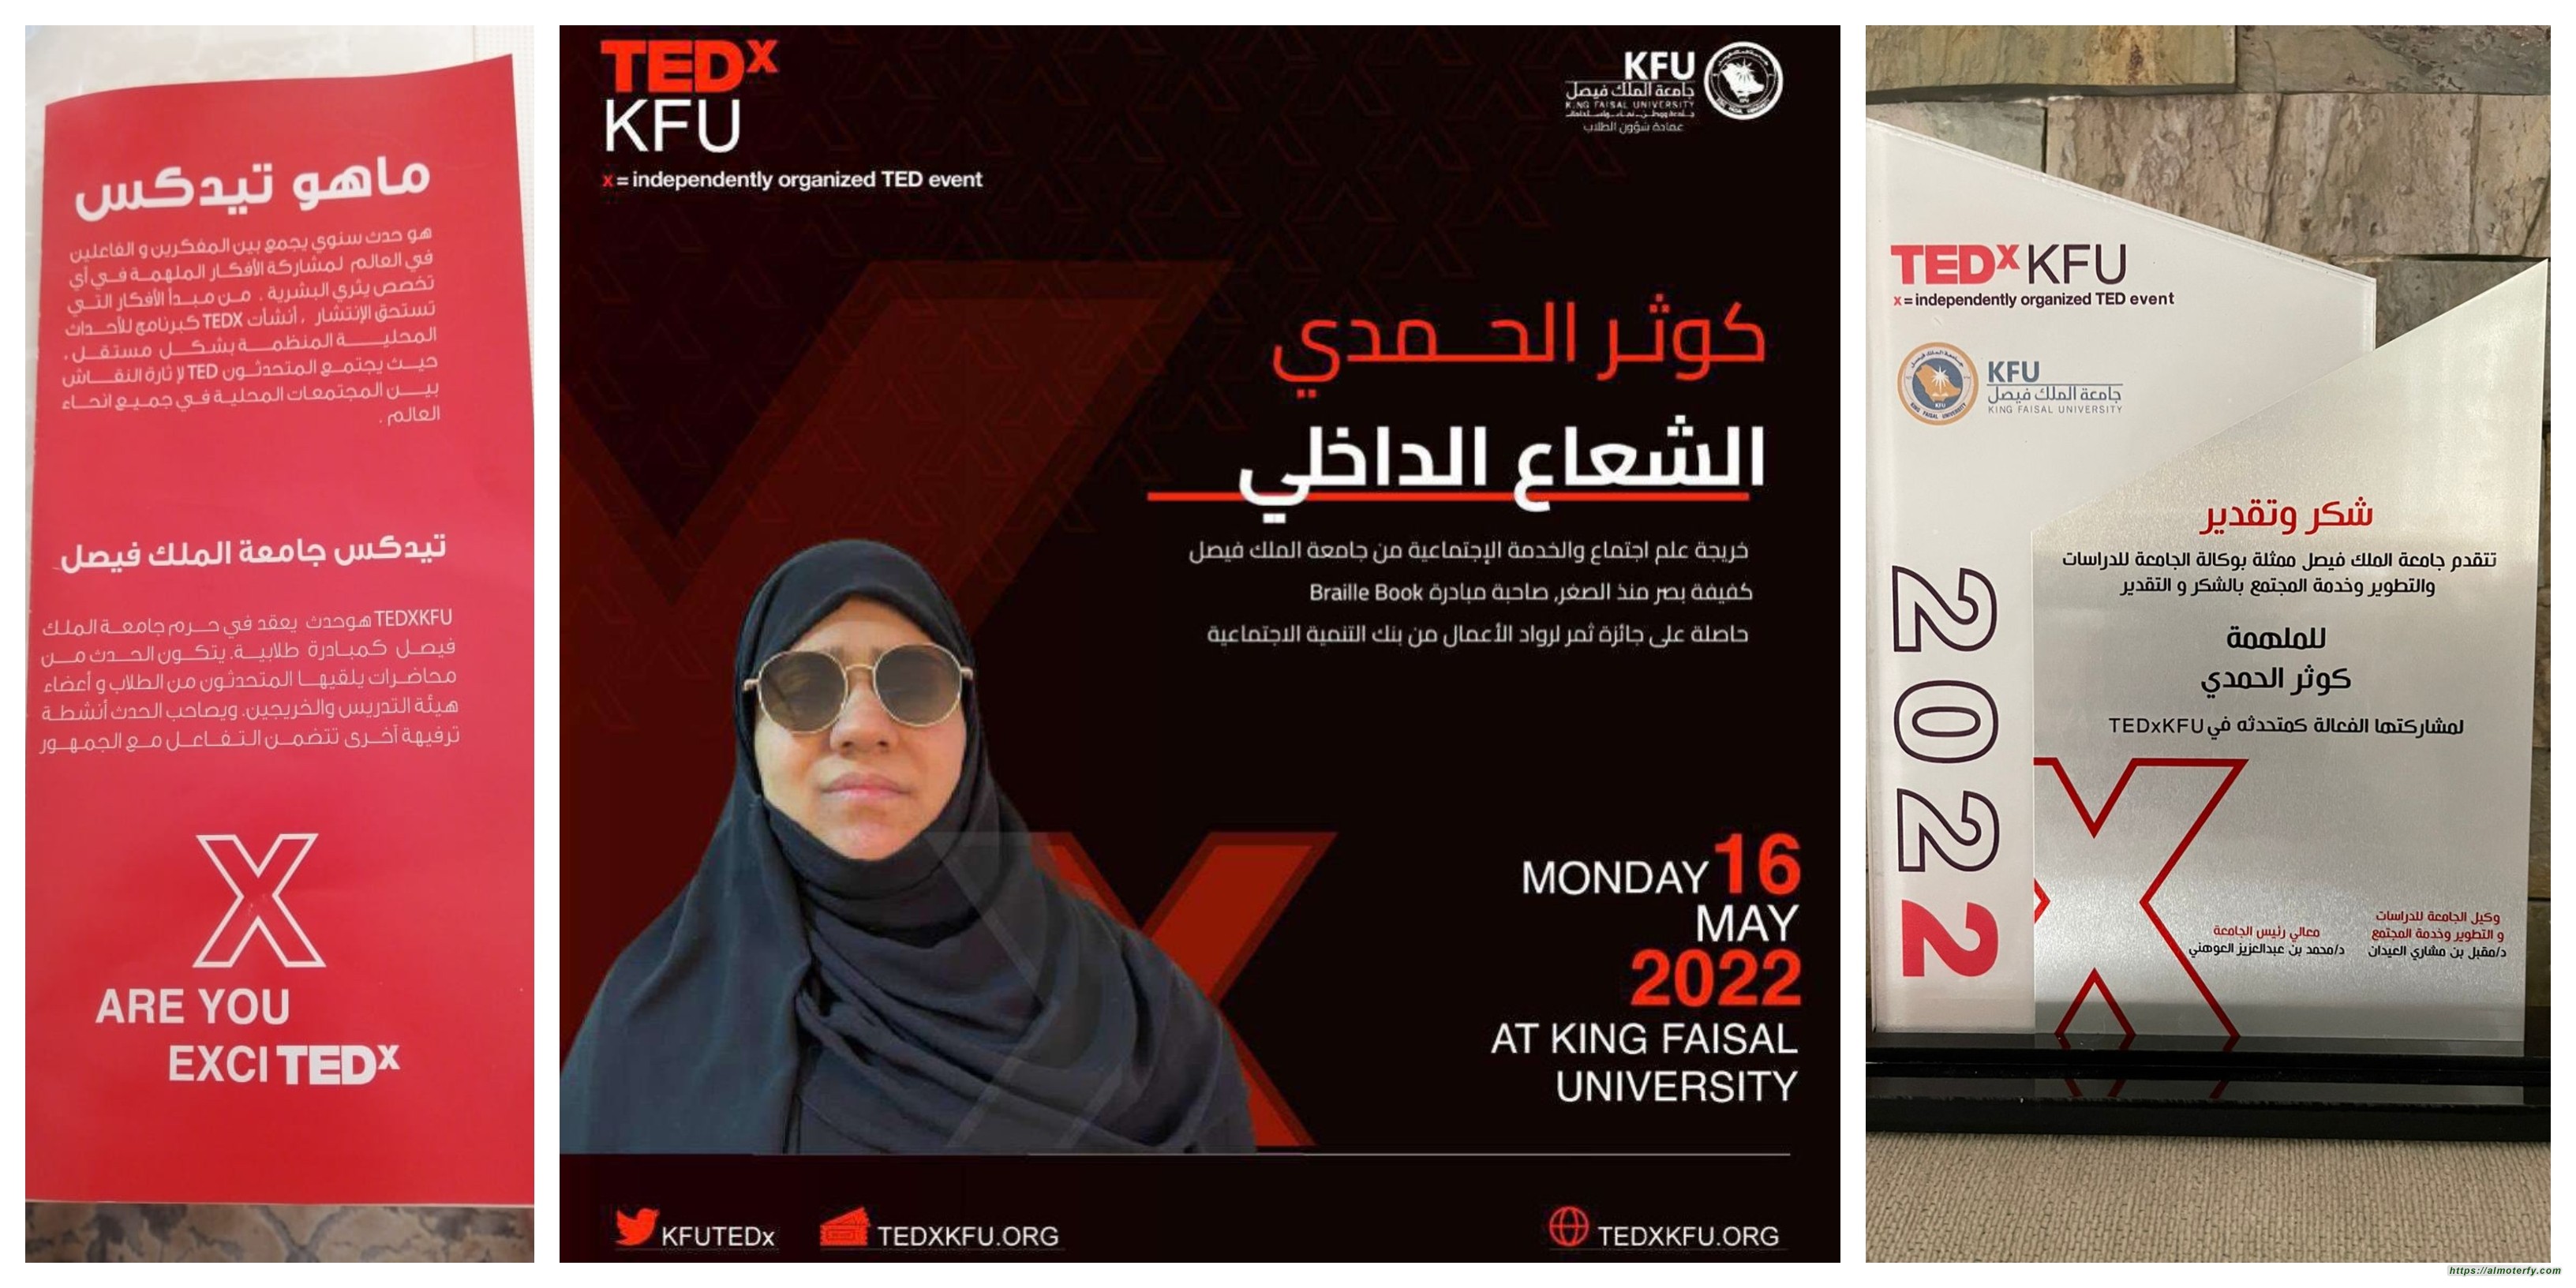 تكريم بنت المطيرفي "كوثر الحمدي" لمشاركتها مع تدكس بجامعة الملك فيصل بالاحساء